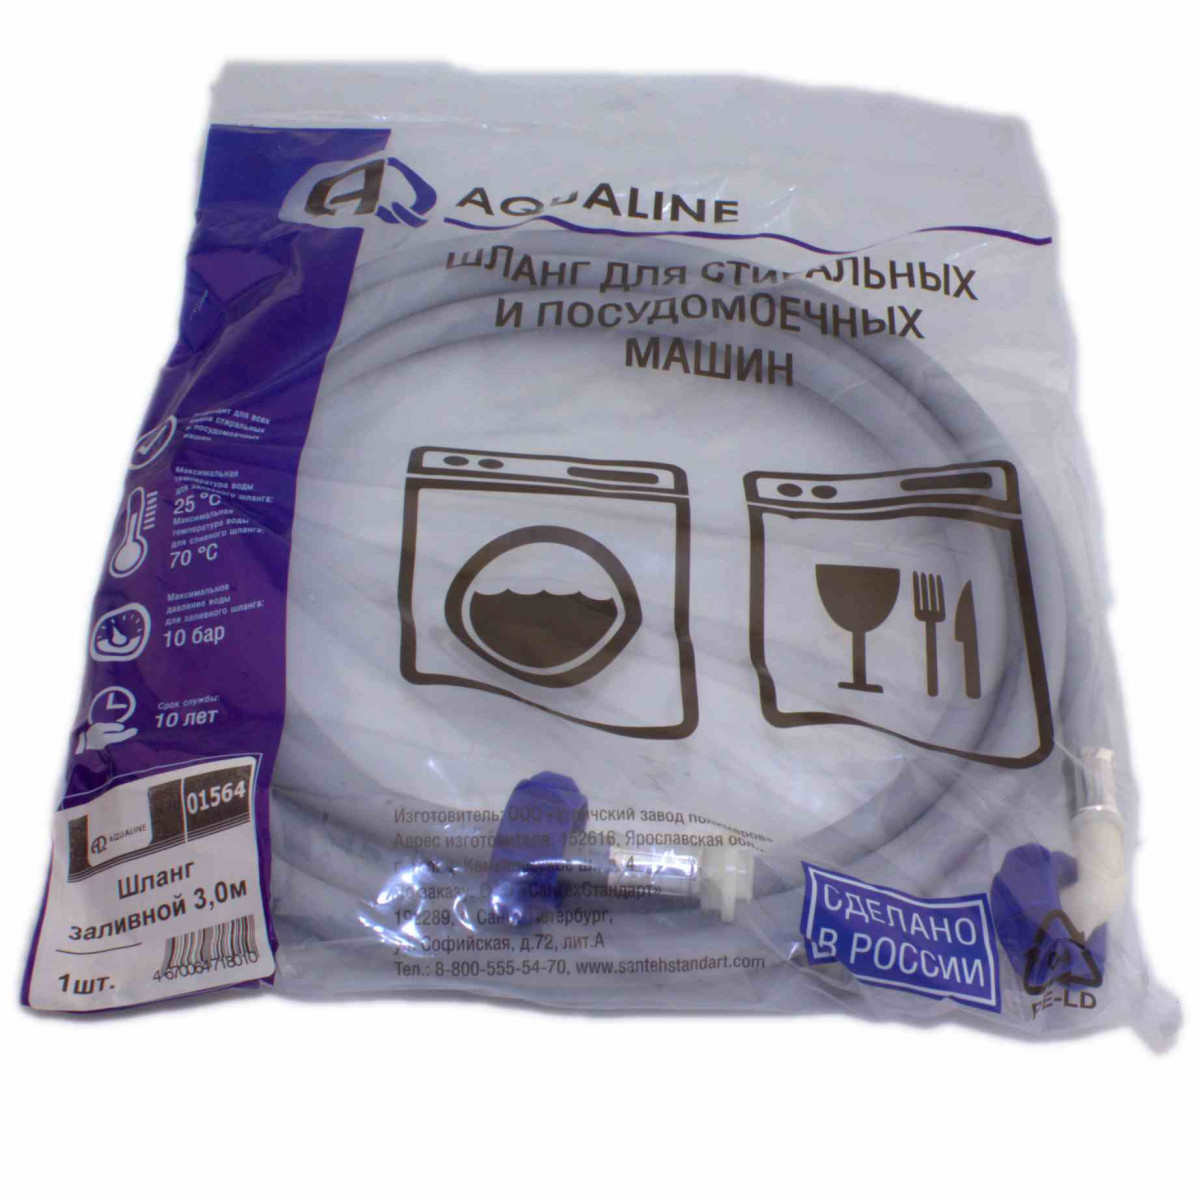 AQUALINE Шланг заливной для стиральных и посудомоечных машин 3,0 м, 01564